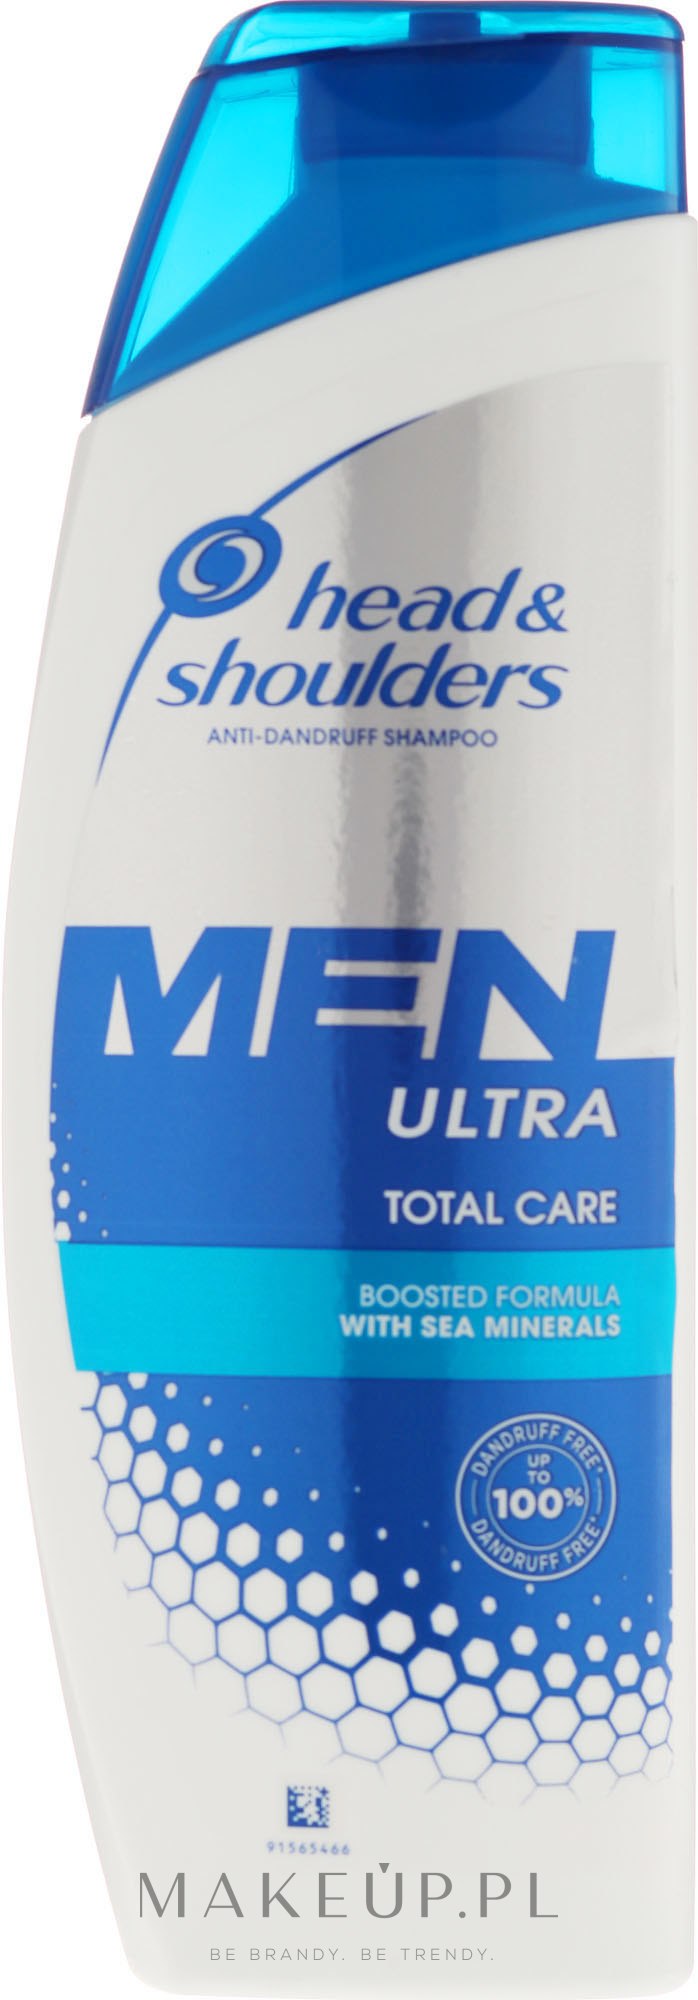 head & shoulders szampon men przeciwłupieżowy